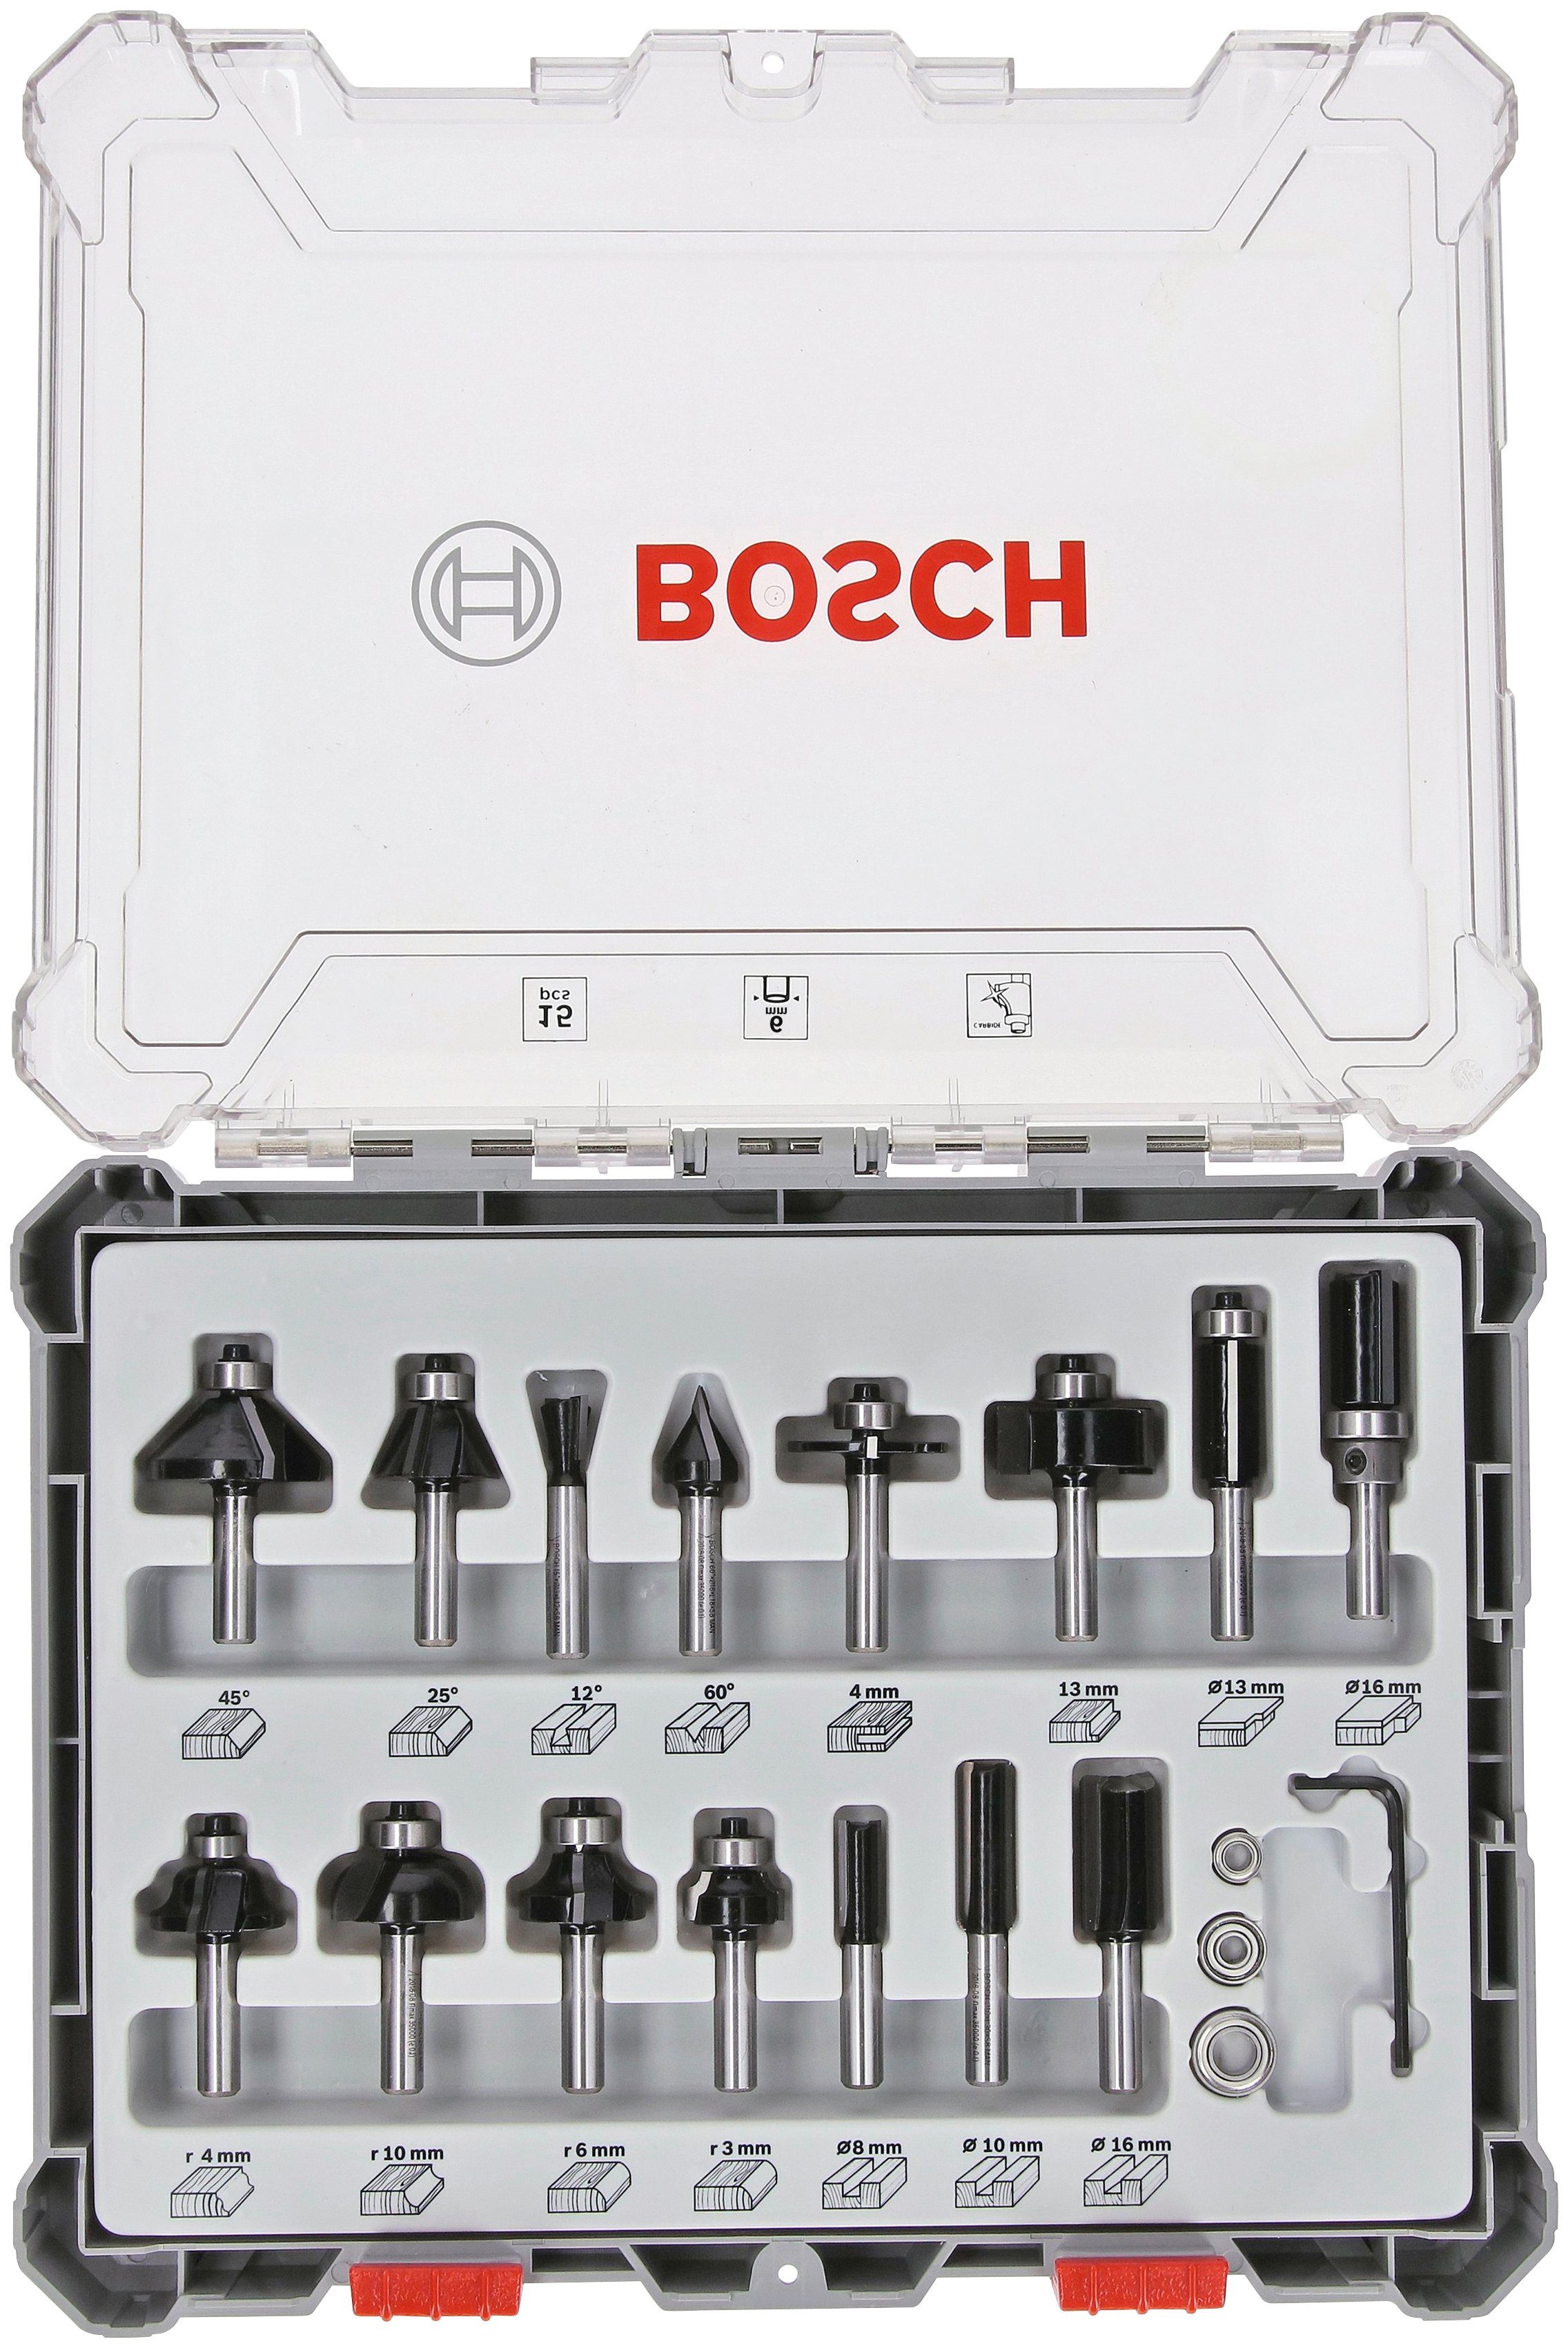 Bosch Professional Fräser-Set Mixed, 15-tlg., 6-mm-Schaft